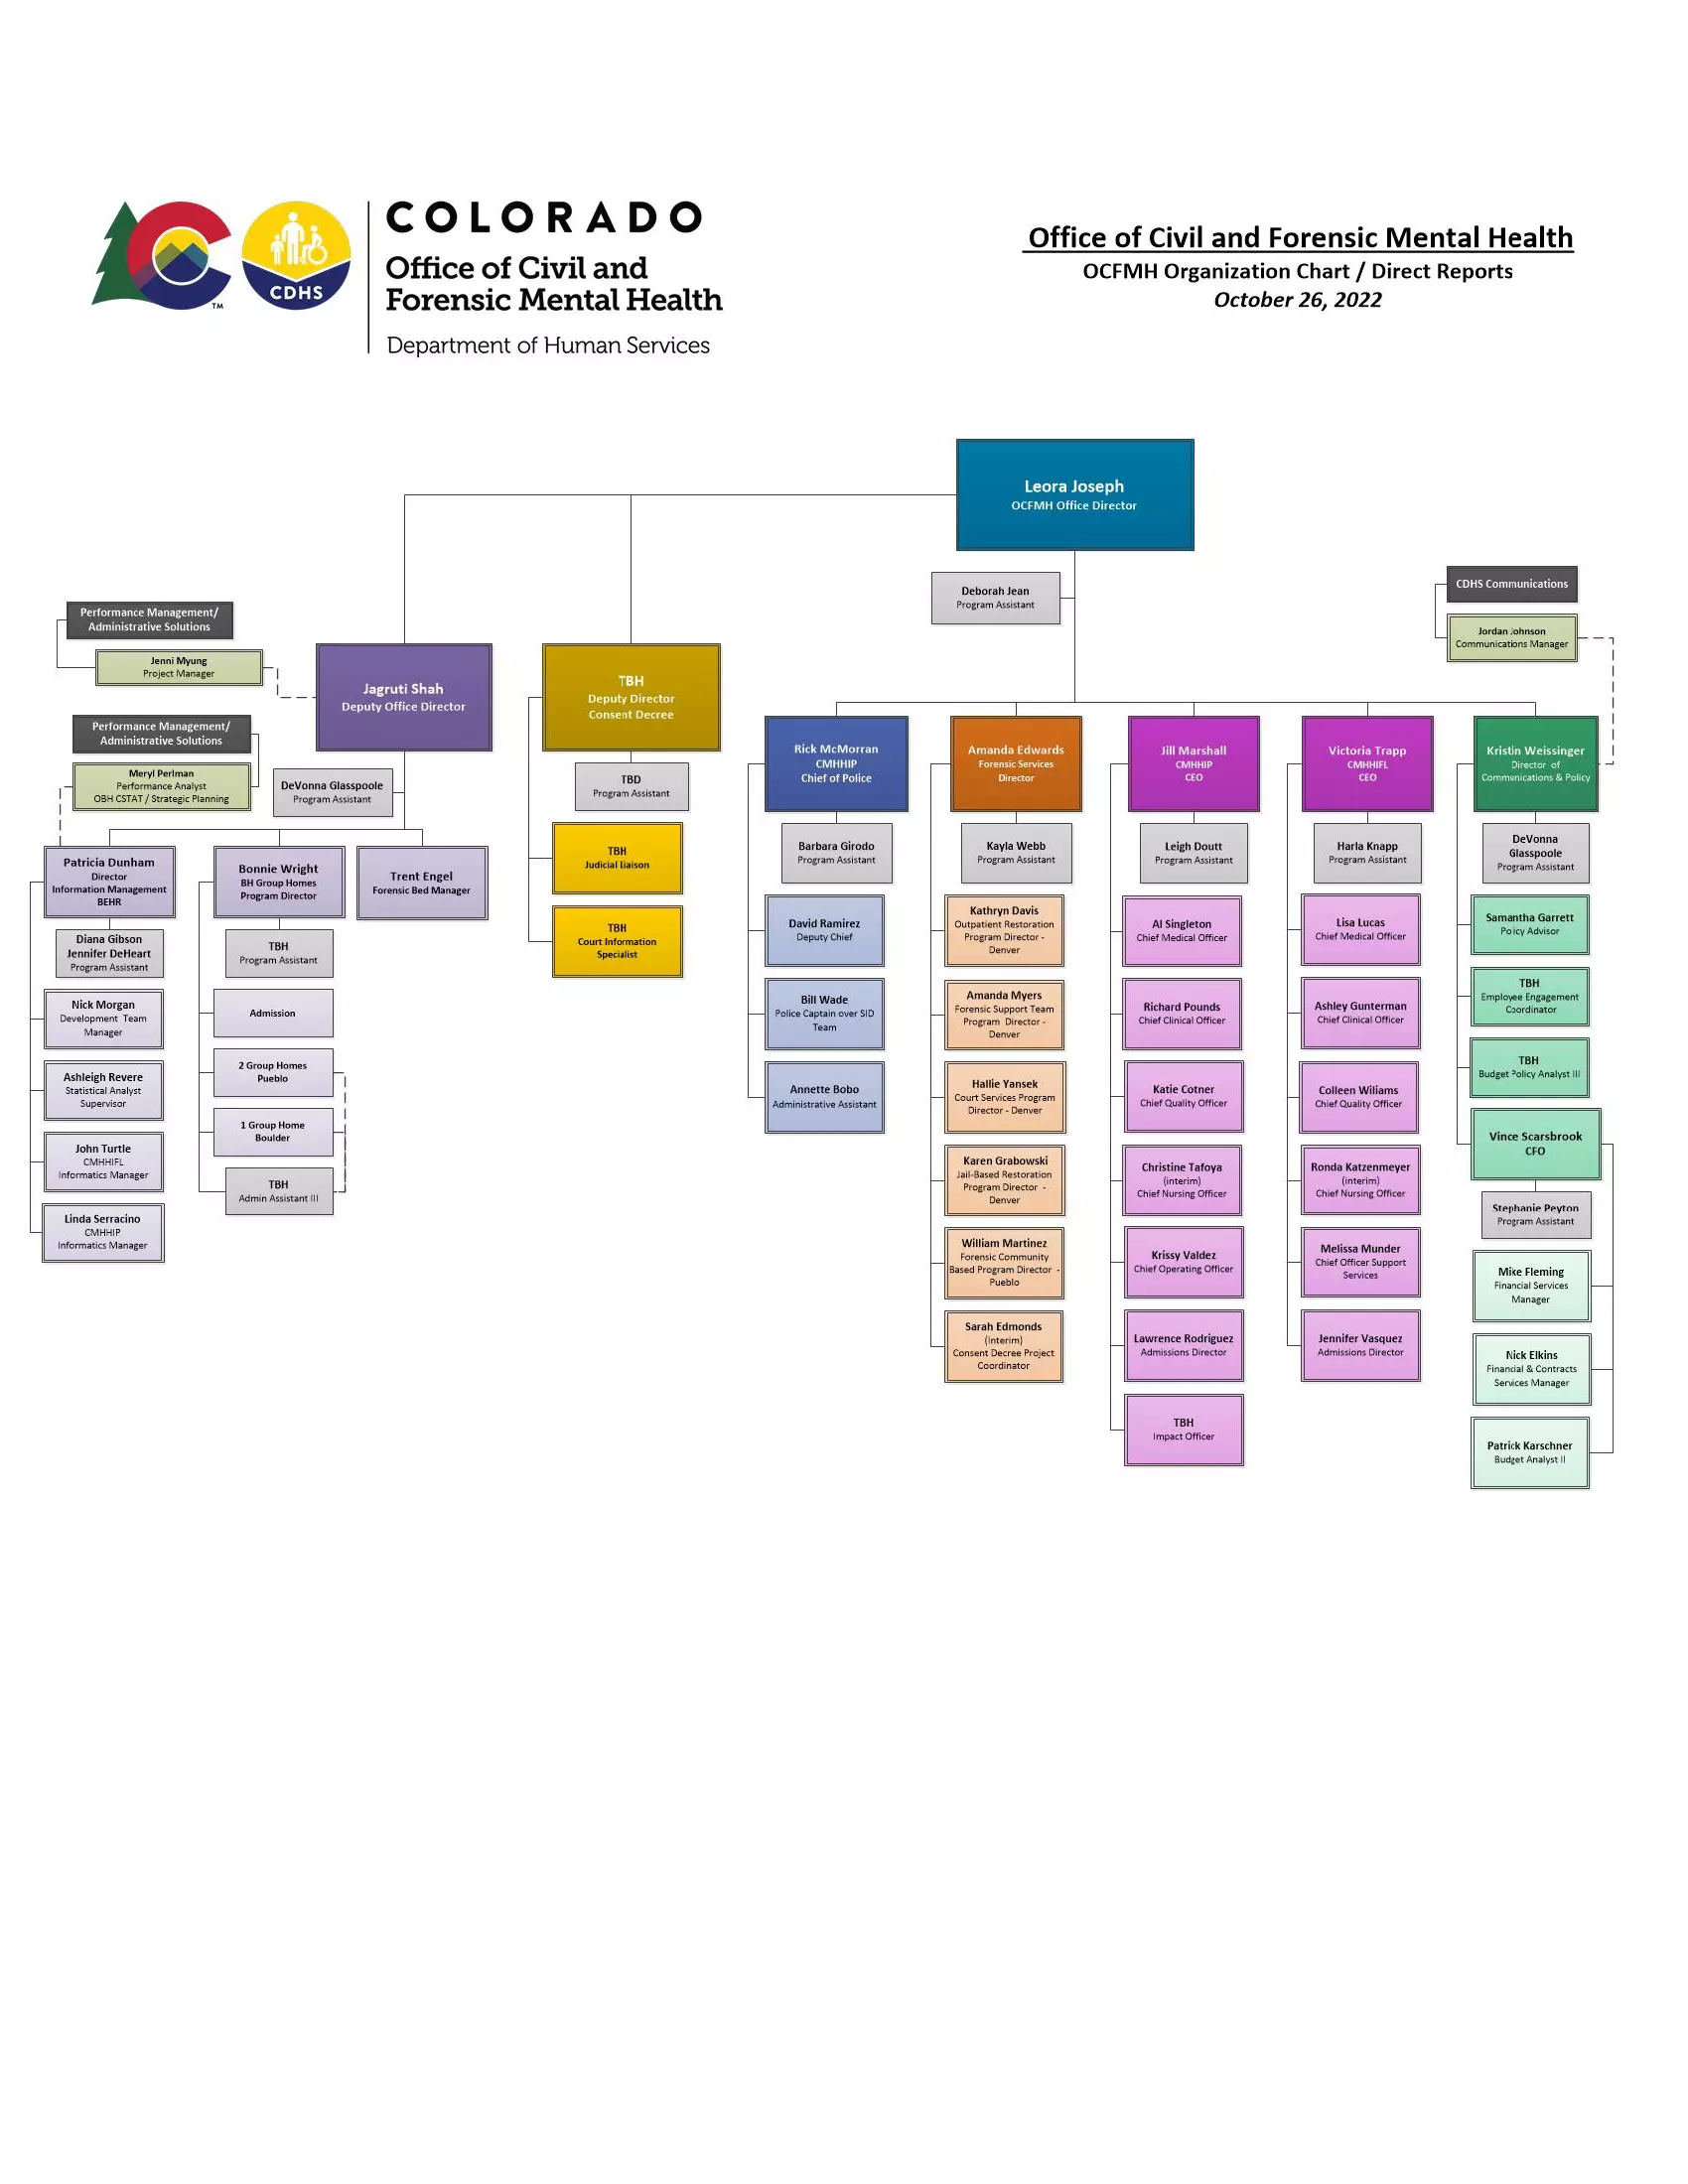 OCFMH org chart